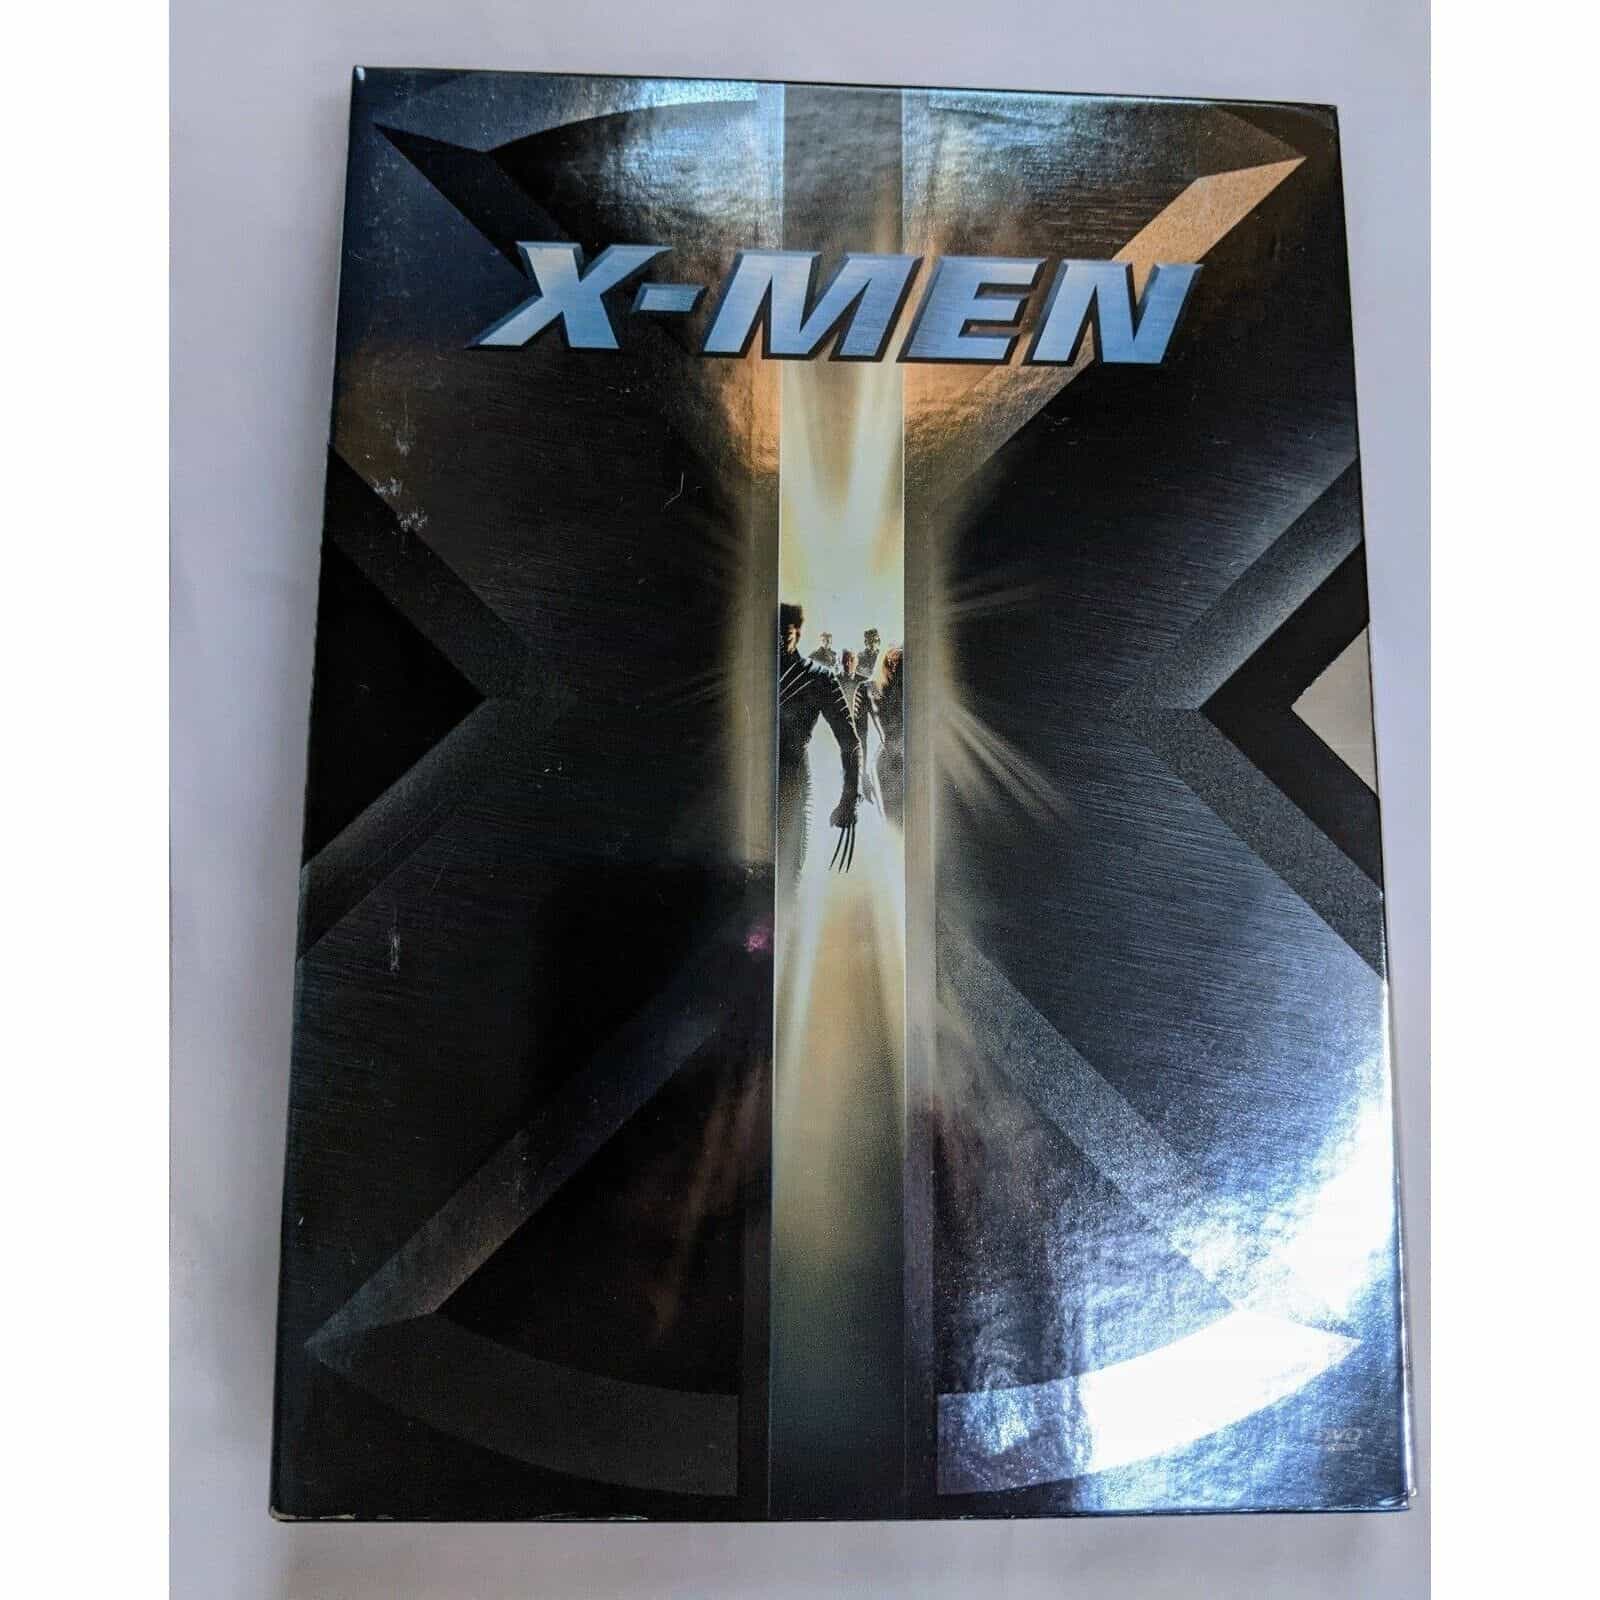 X-Men DVD movie